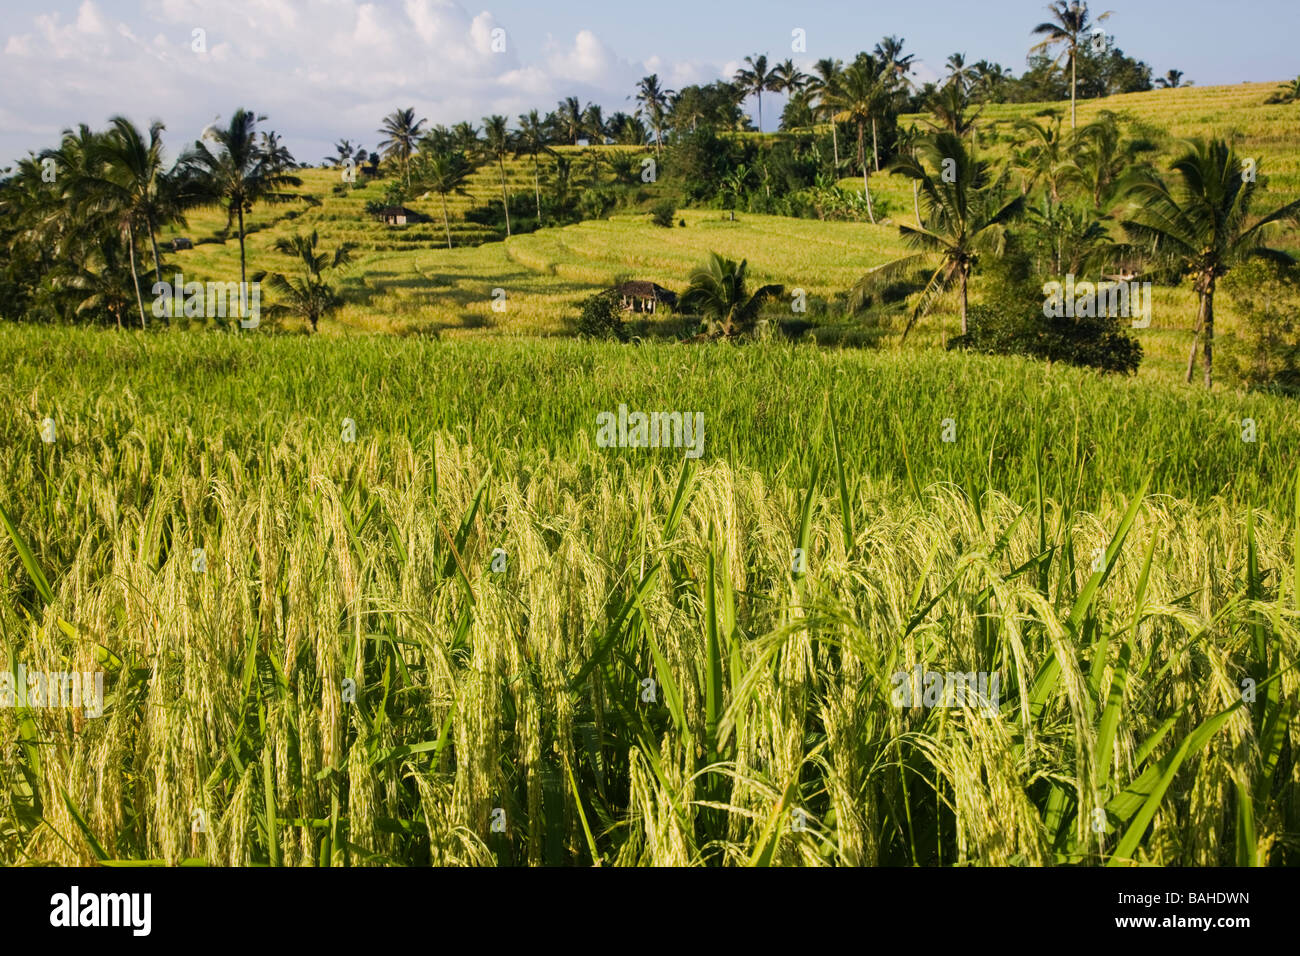 Prêts pour la récolte de riz dans une rizière à Bali Indonésie Pupan Banque D'Images